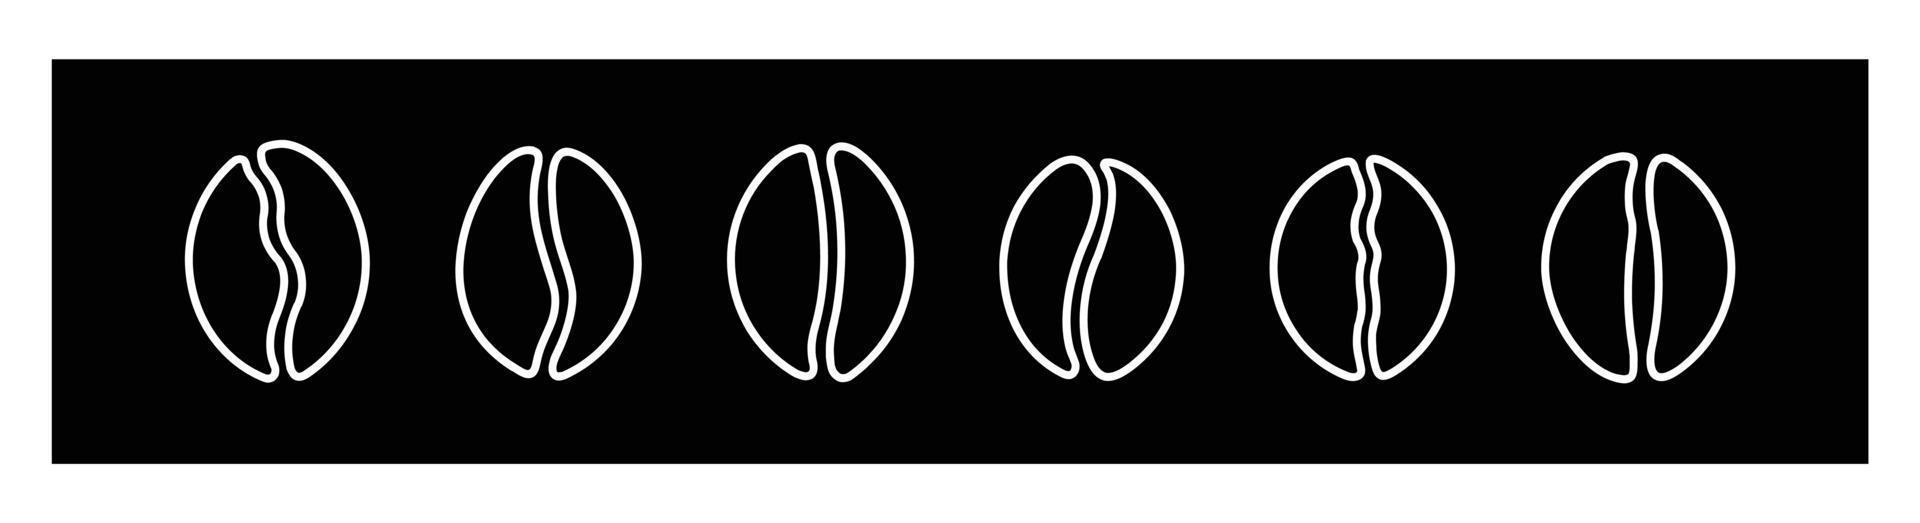 koffie bonen icoon set. vector illustratie. een geïsoleerd vlak icoon illustratie van koffie bonen.